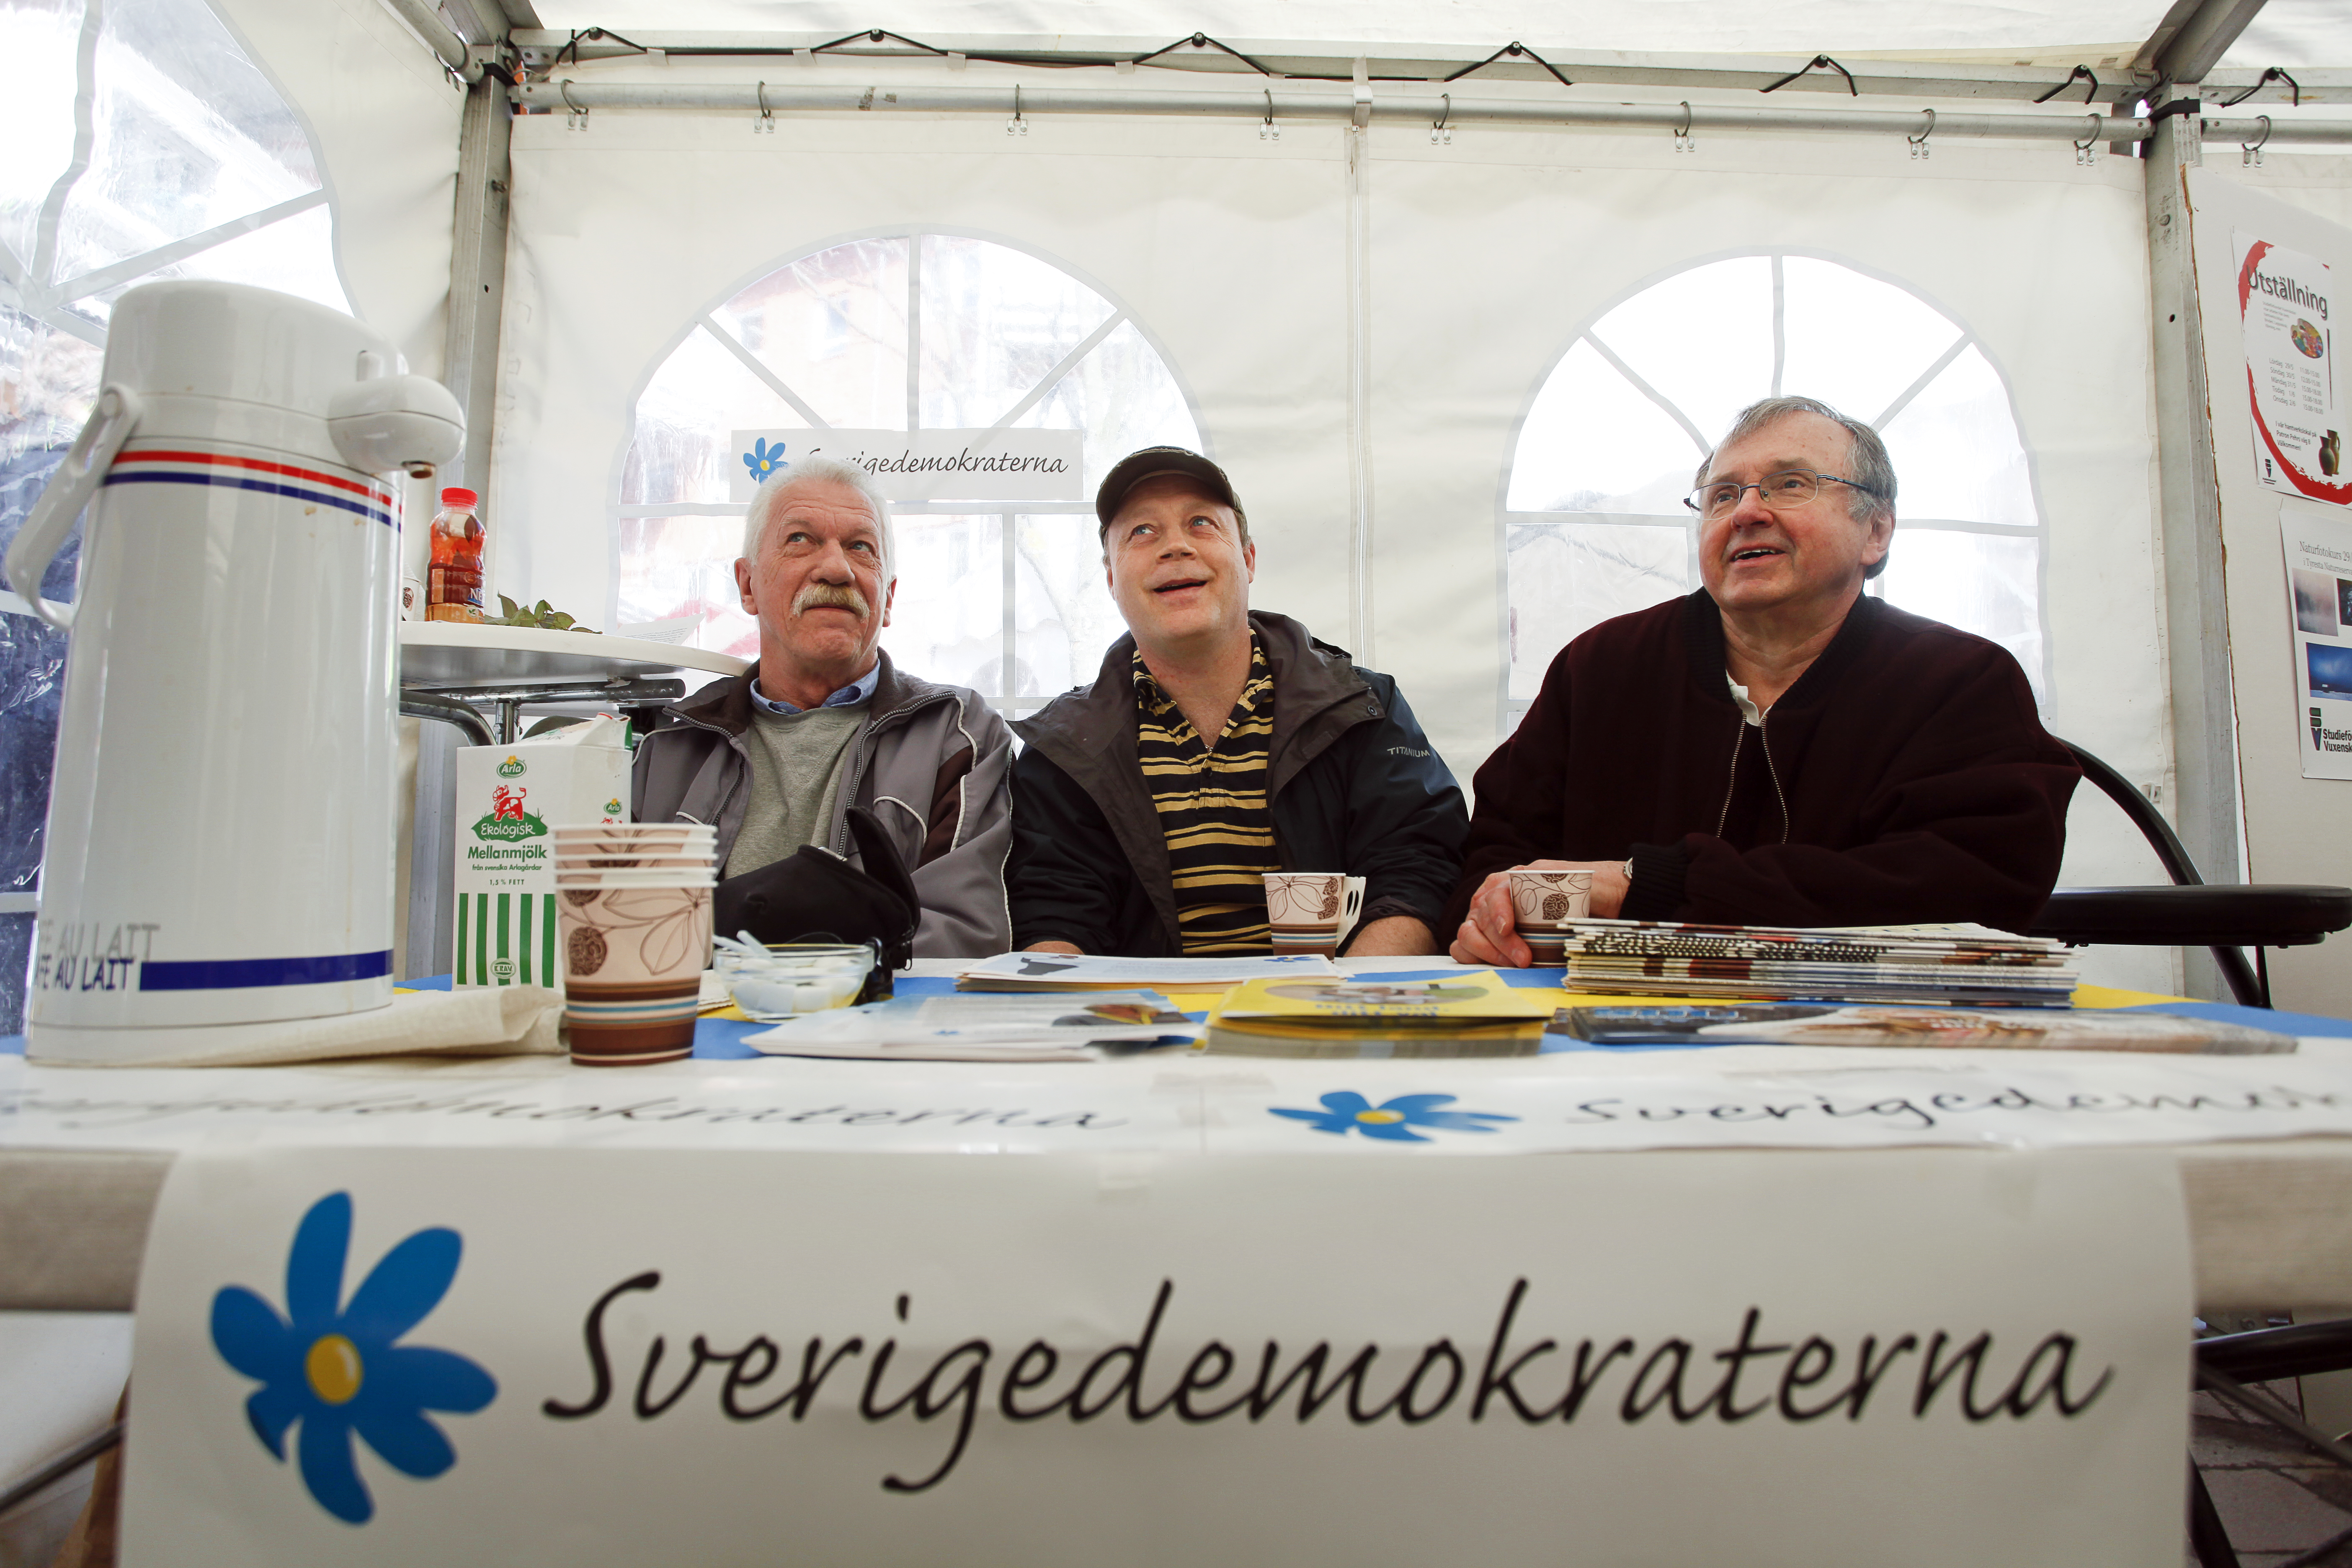 Arnold Boström (längst till höger) menar att svenska kyrkan är politisk när den agerar fristad för flyktingar.